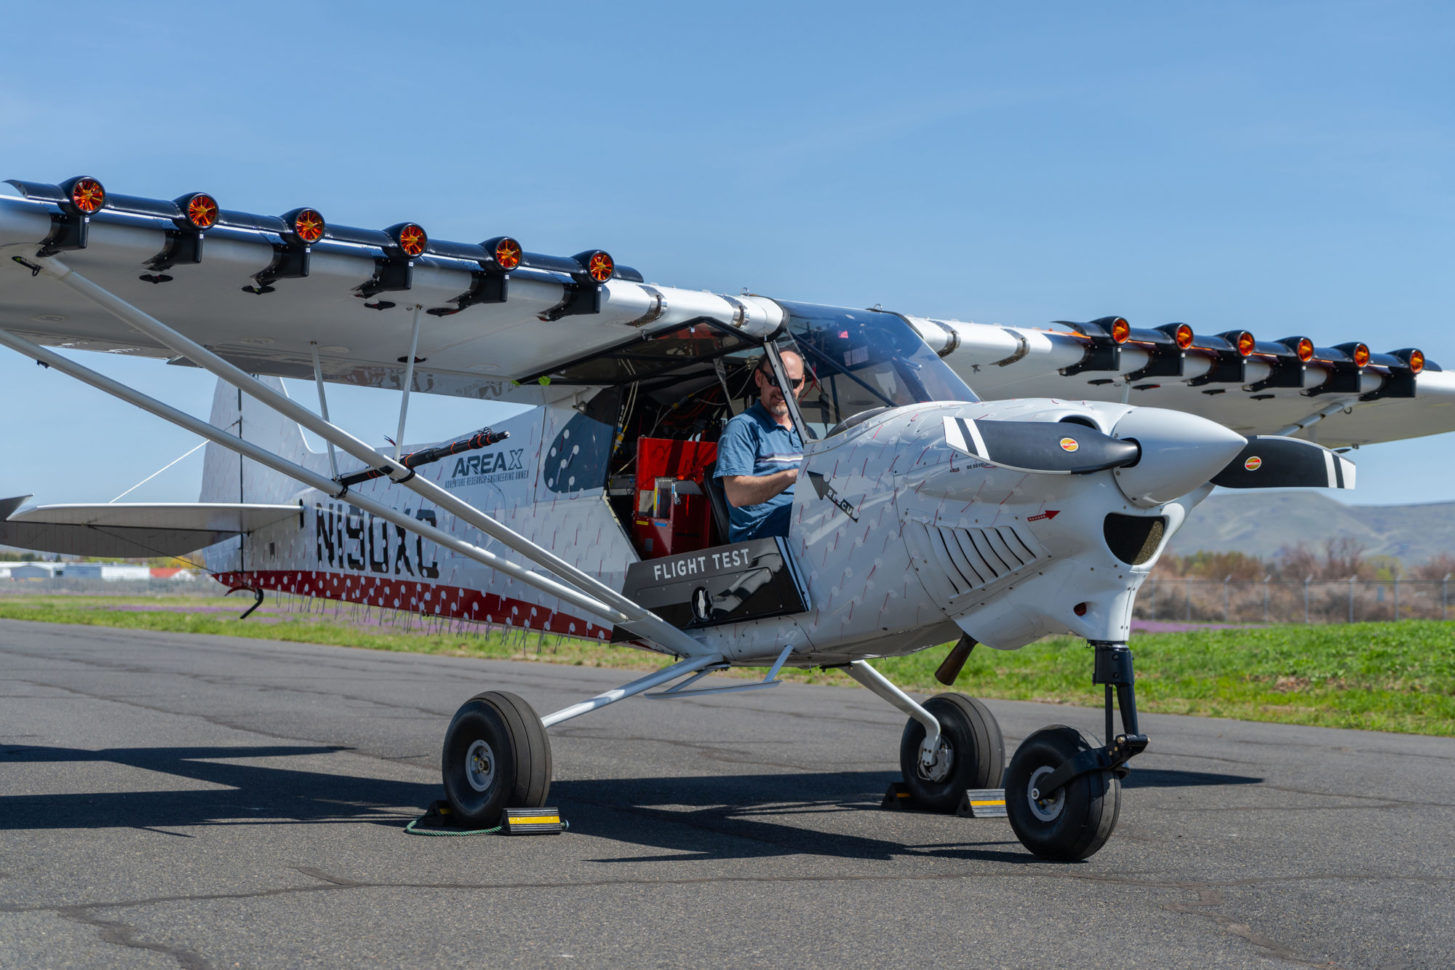 Cub Crafters testet eine neue Innovation namens ELAS. Das System kombiniert kleine elektrische Gebläse mit Vorflügeln, um so den Luftstrom über die Tragfläche des Flugzeugs zu beschleunigen.